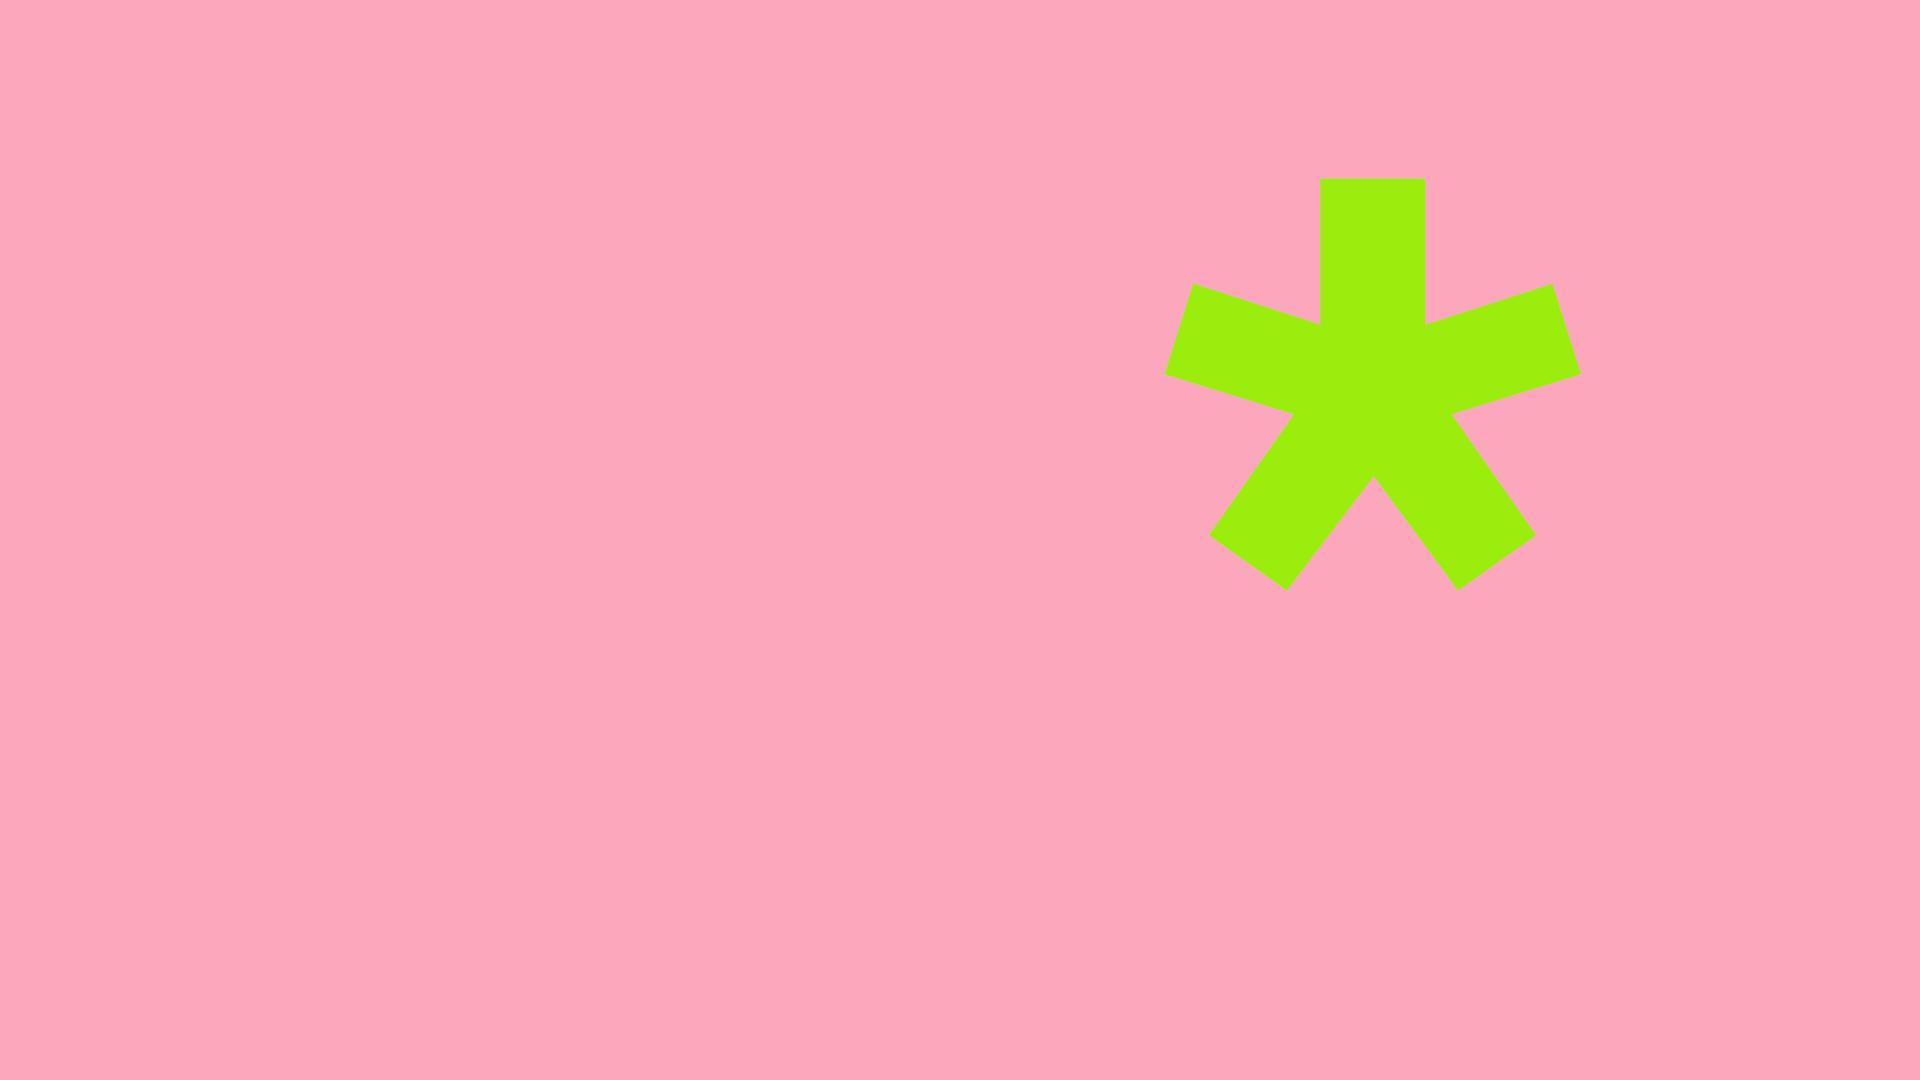 Ein grüner Asterisk auf rosa Grund.